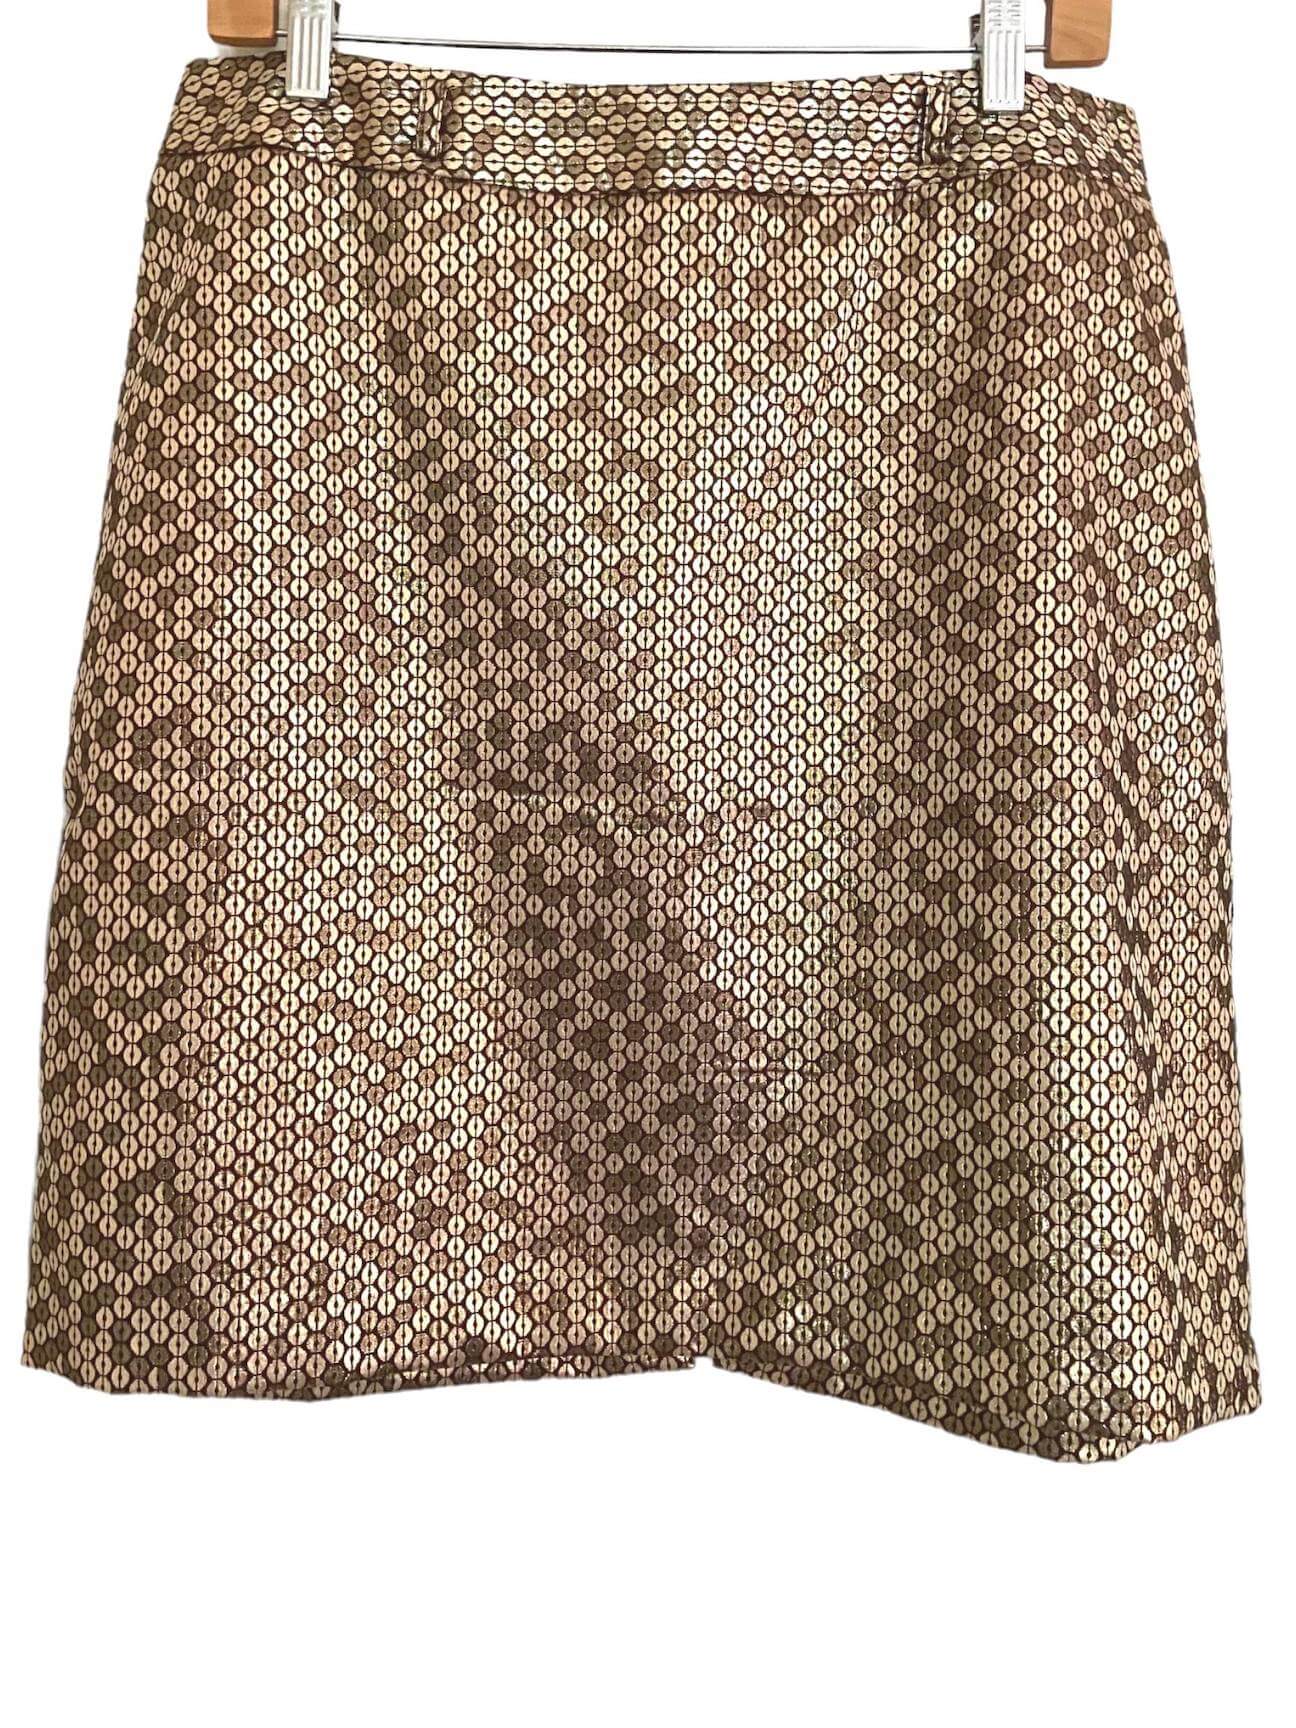 Warm Spring WORTHINGTON shimmer print skirt